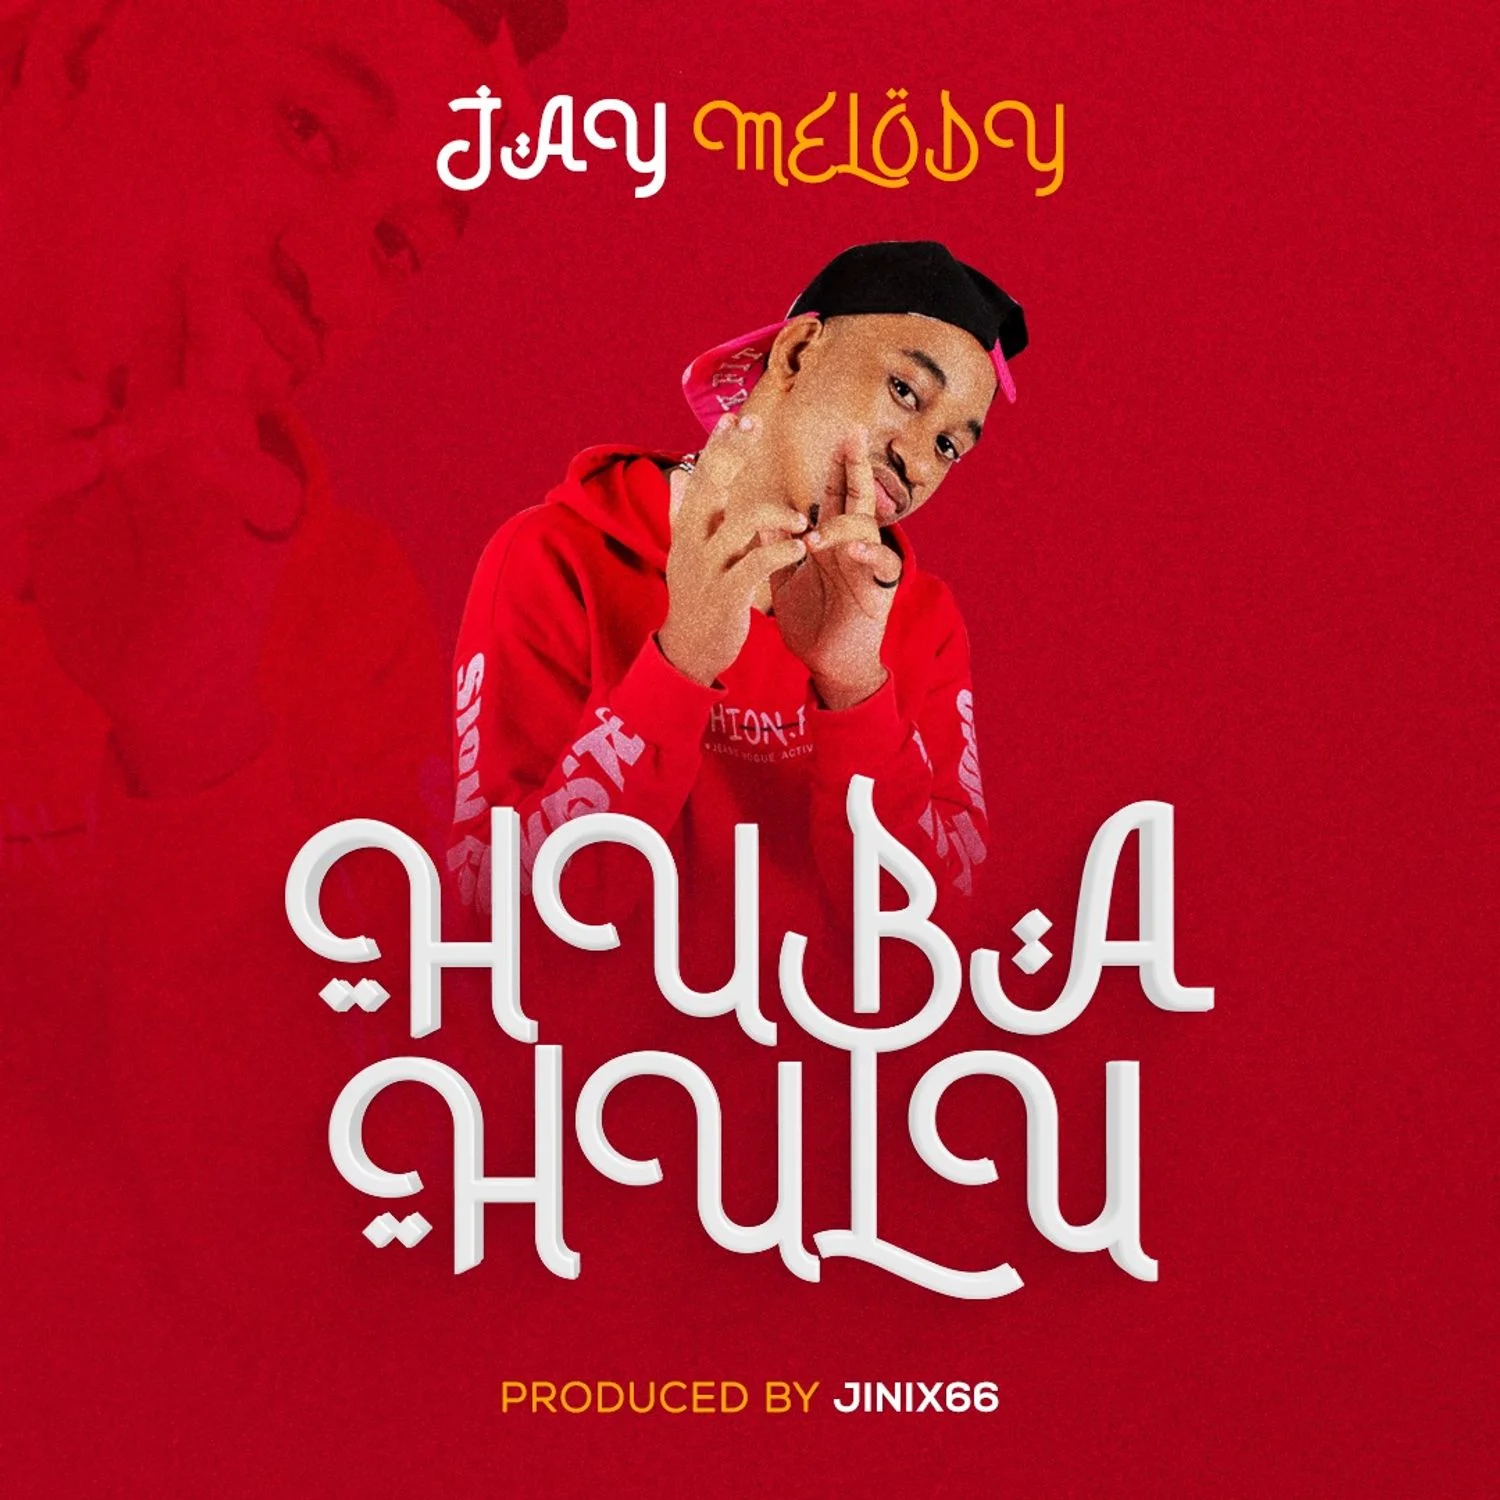 Download | Jay Melody – Huba hulu | Mp3 Audio